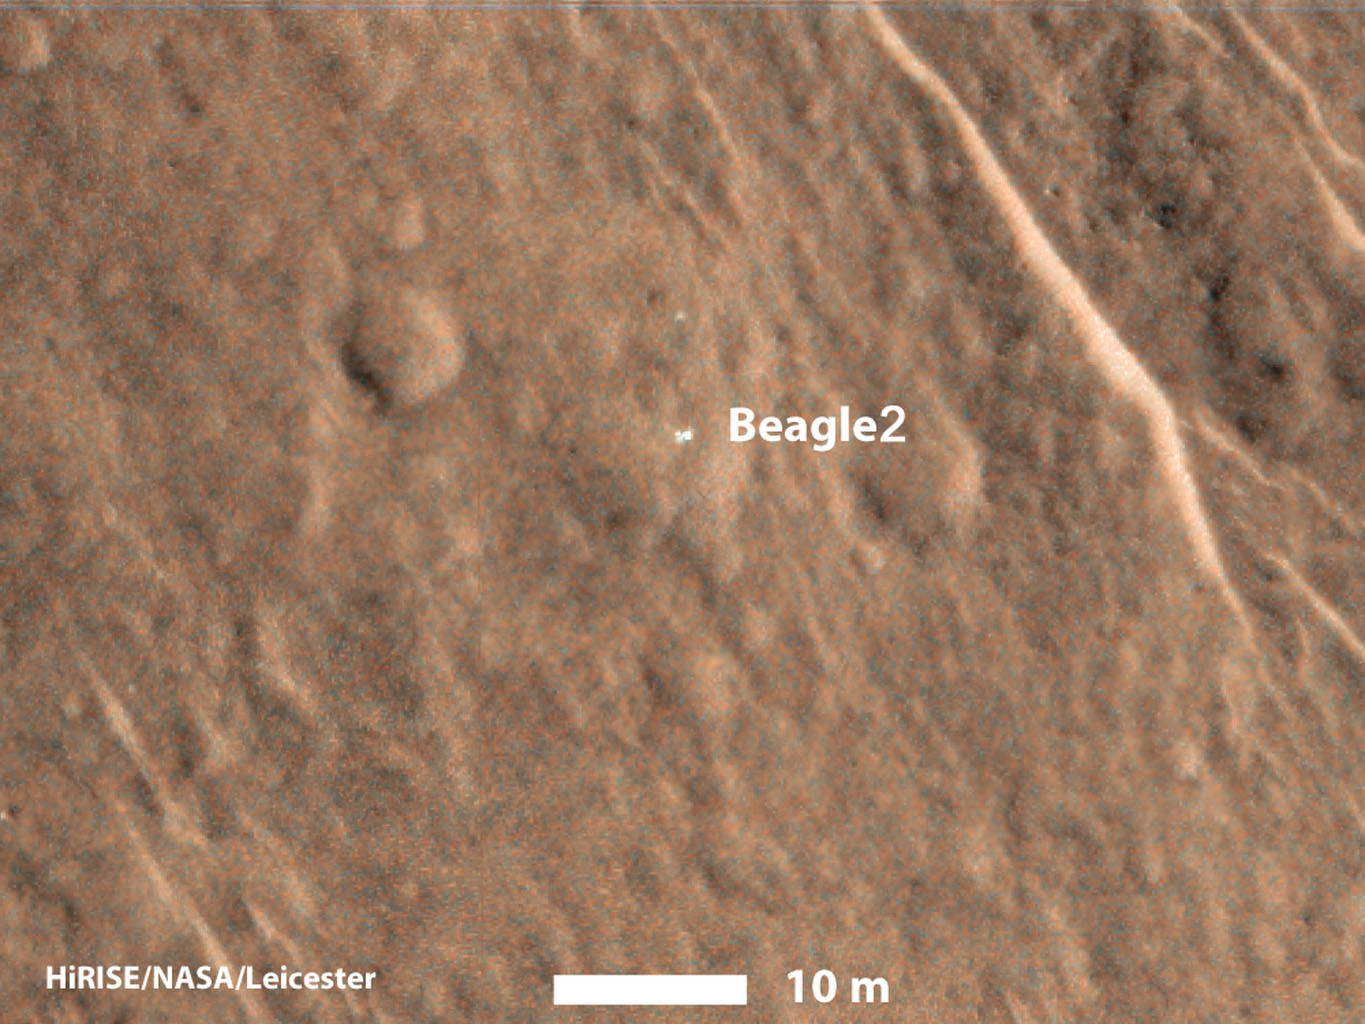 Megtalálták a Beagle-2 Mars szondát